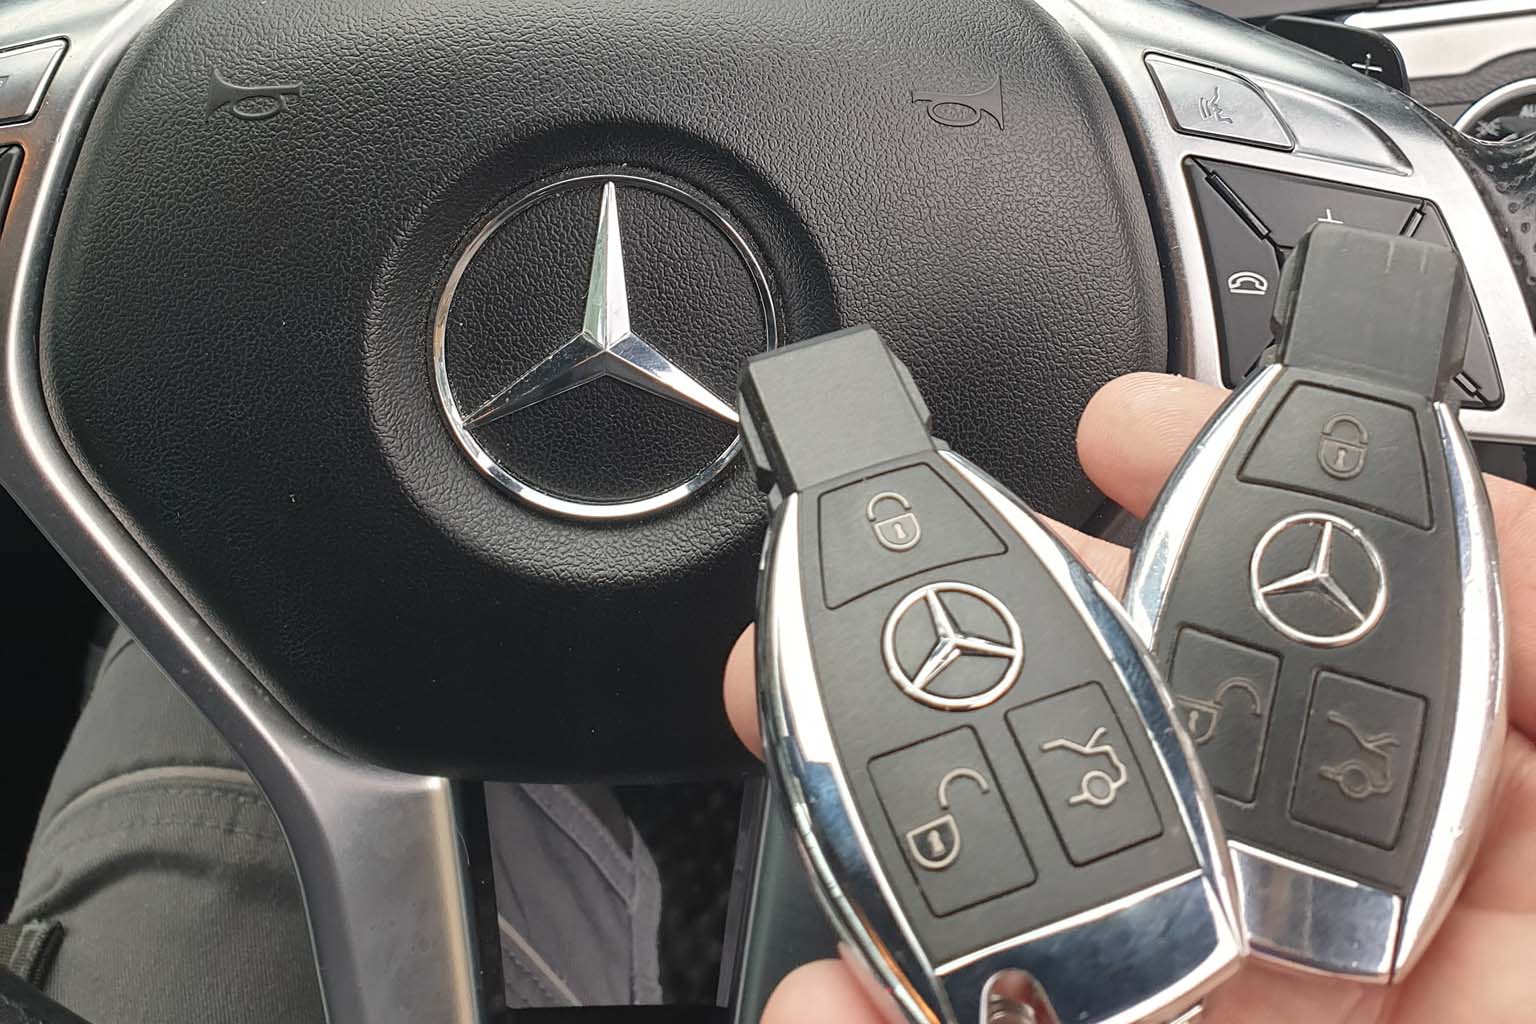 New Mercedes car keys